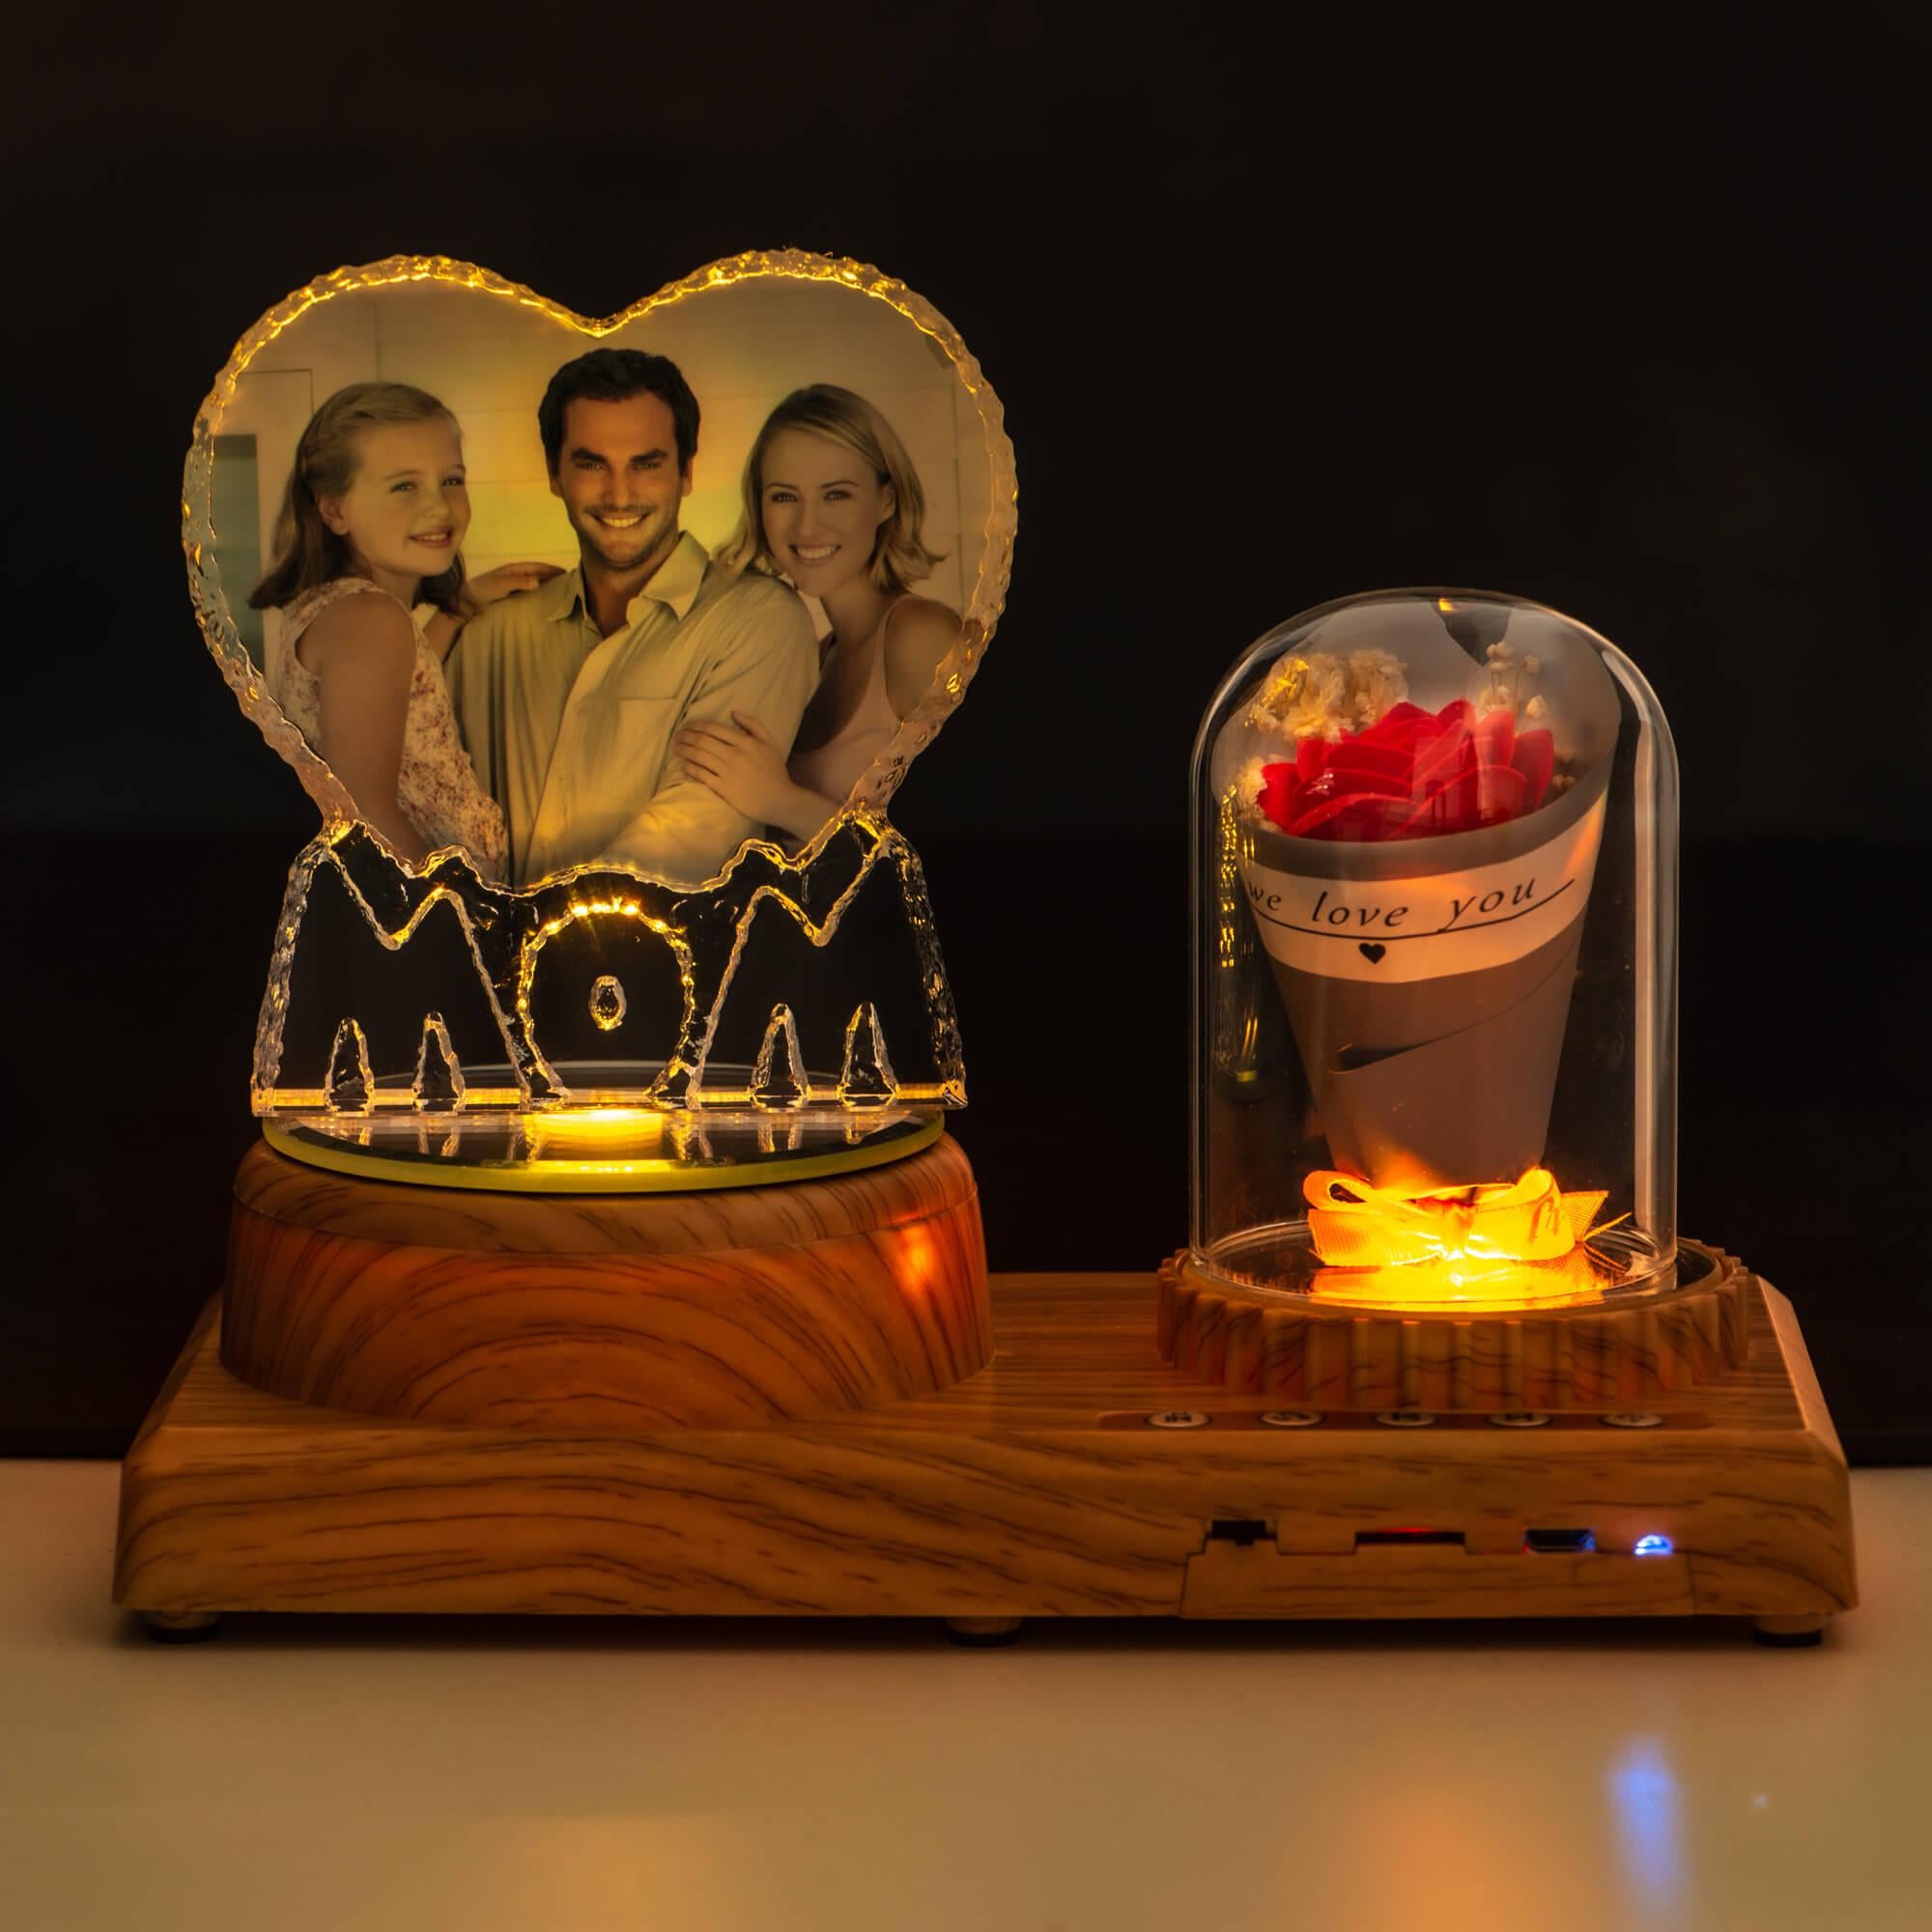 NEONIP-Lampada rosa Bluetooth con foto personalizzata-MOM